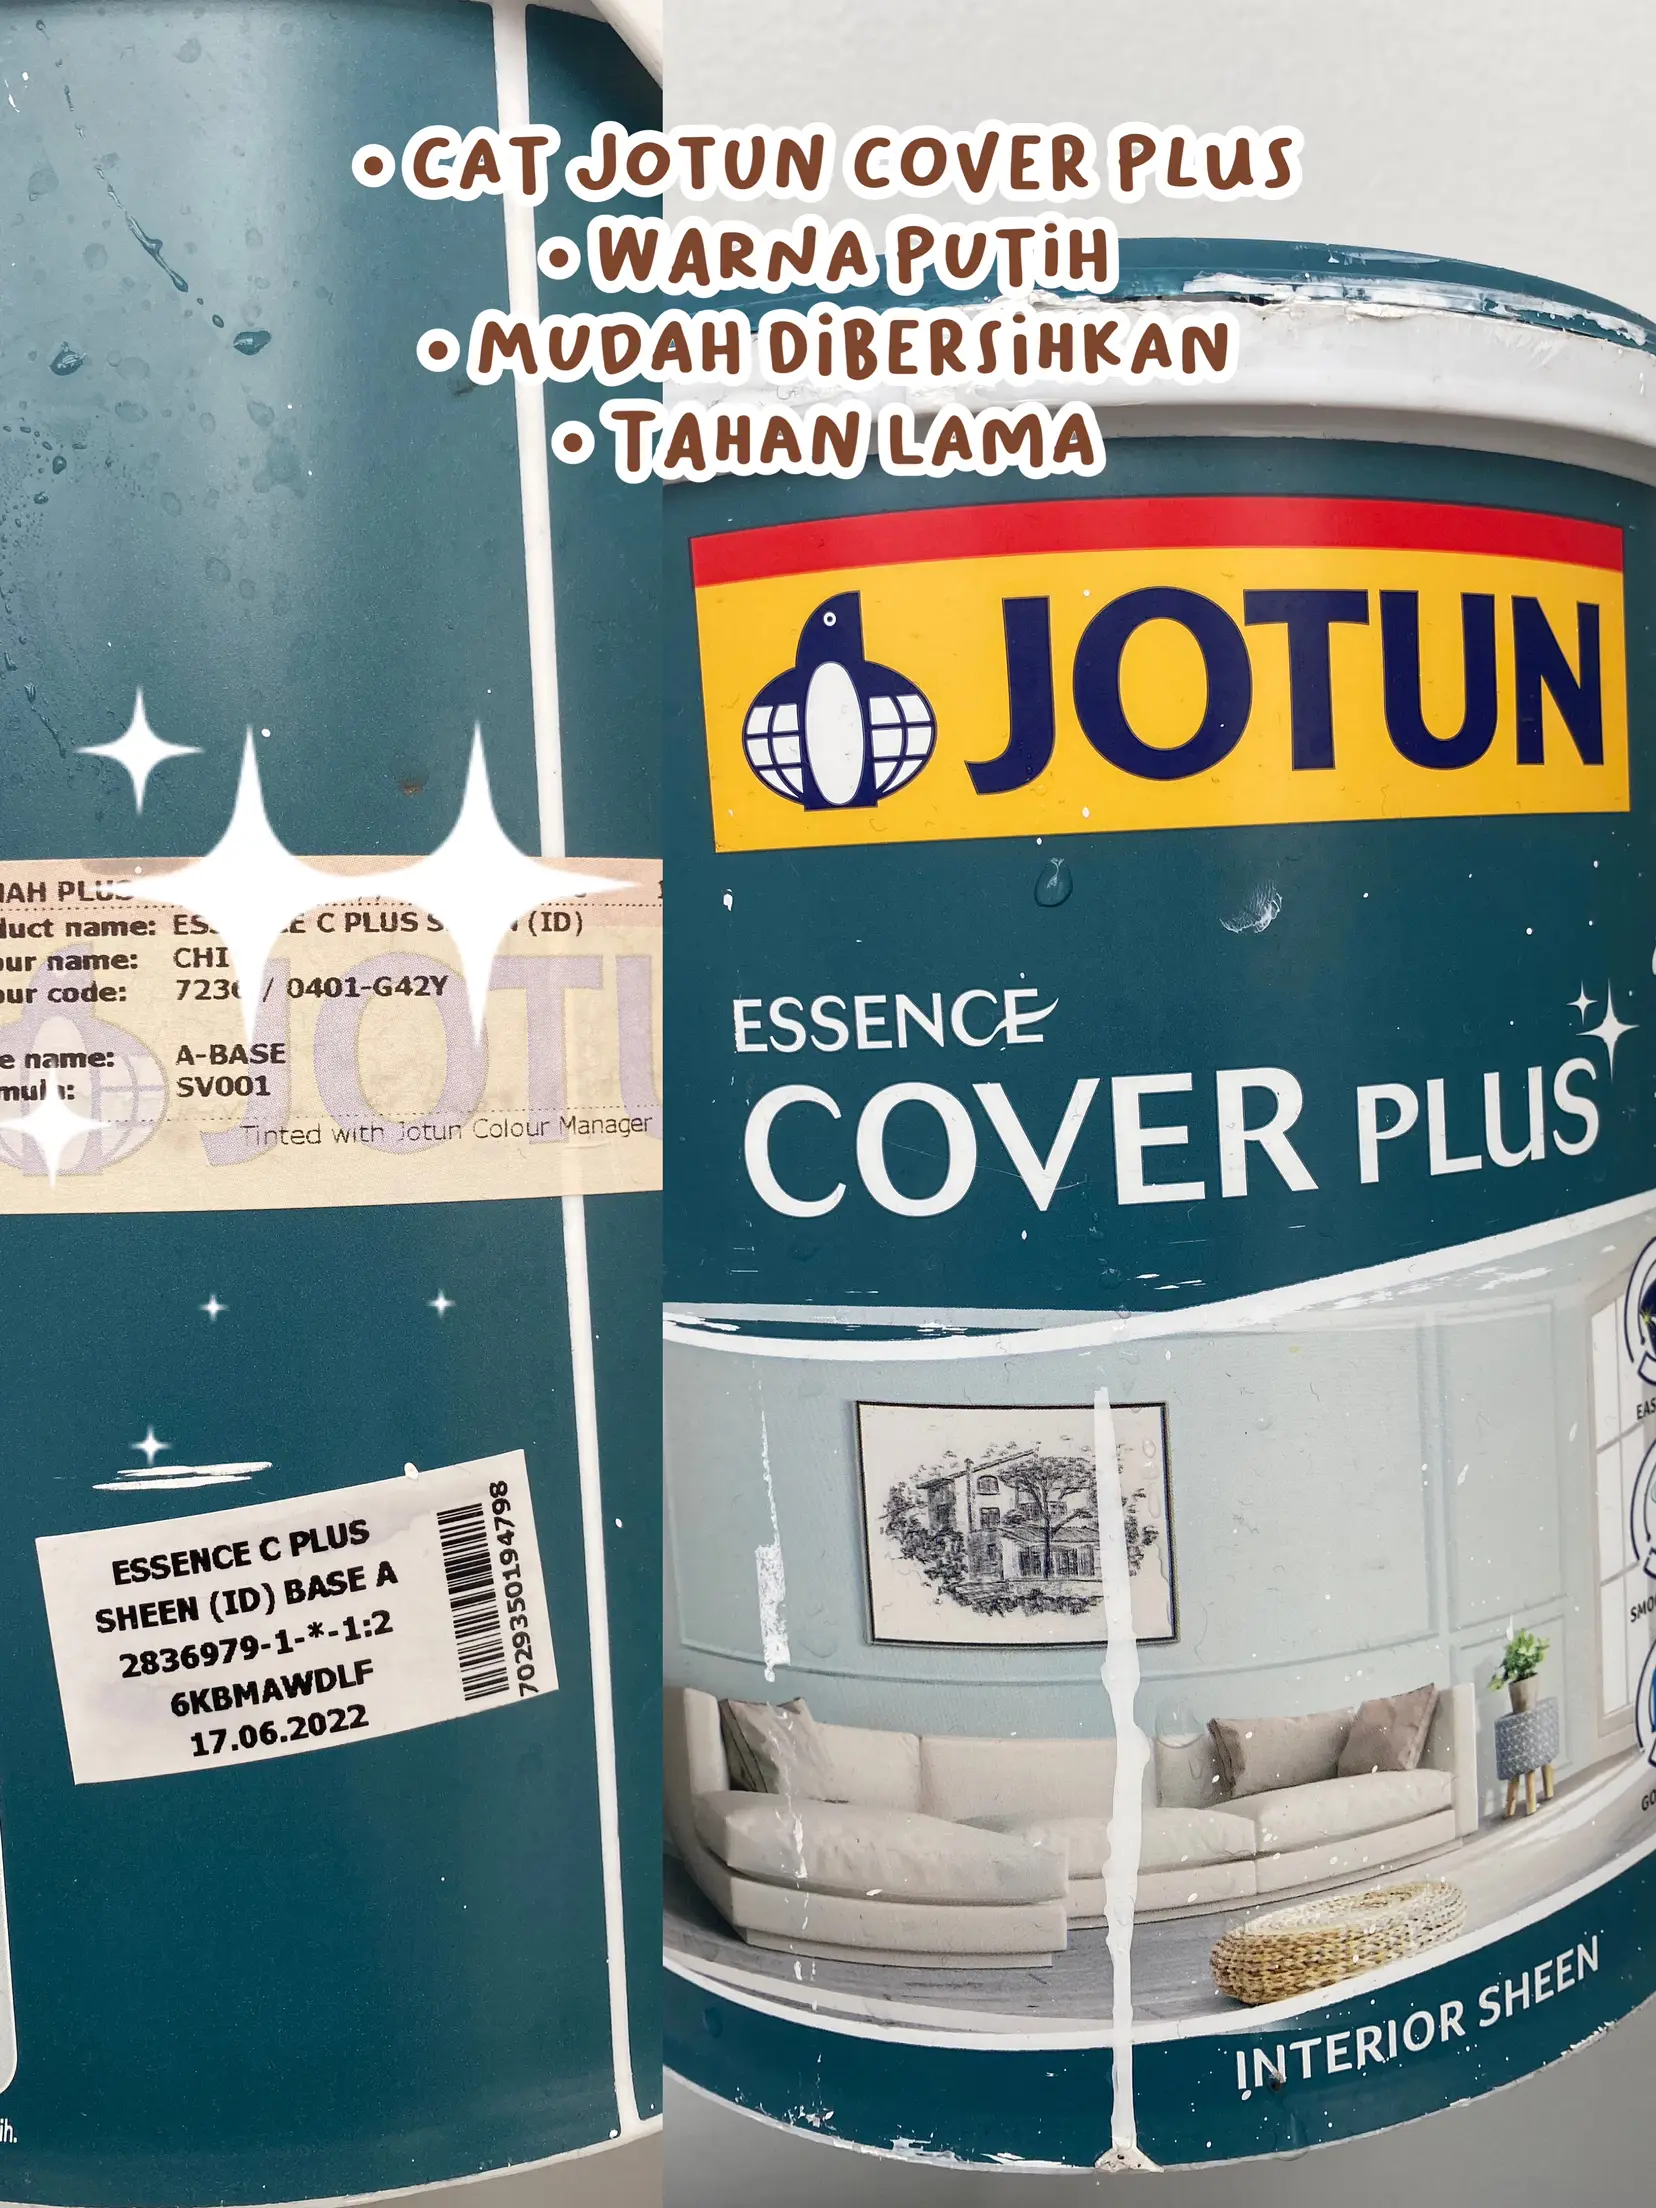 JOTUN ESSENCE COVER PLUS MATT 1 & 5 Liter Petal Pink 3021